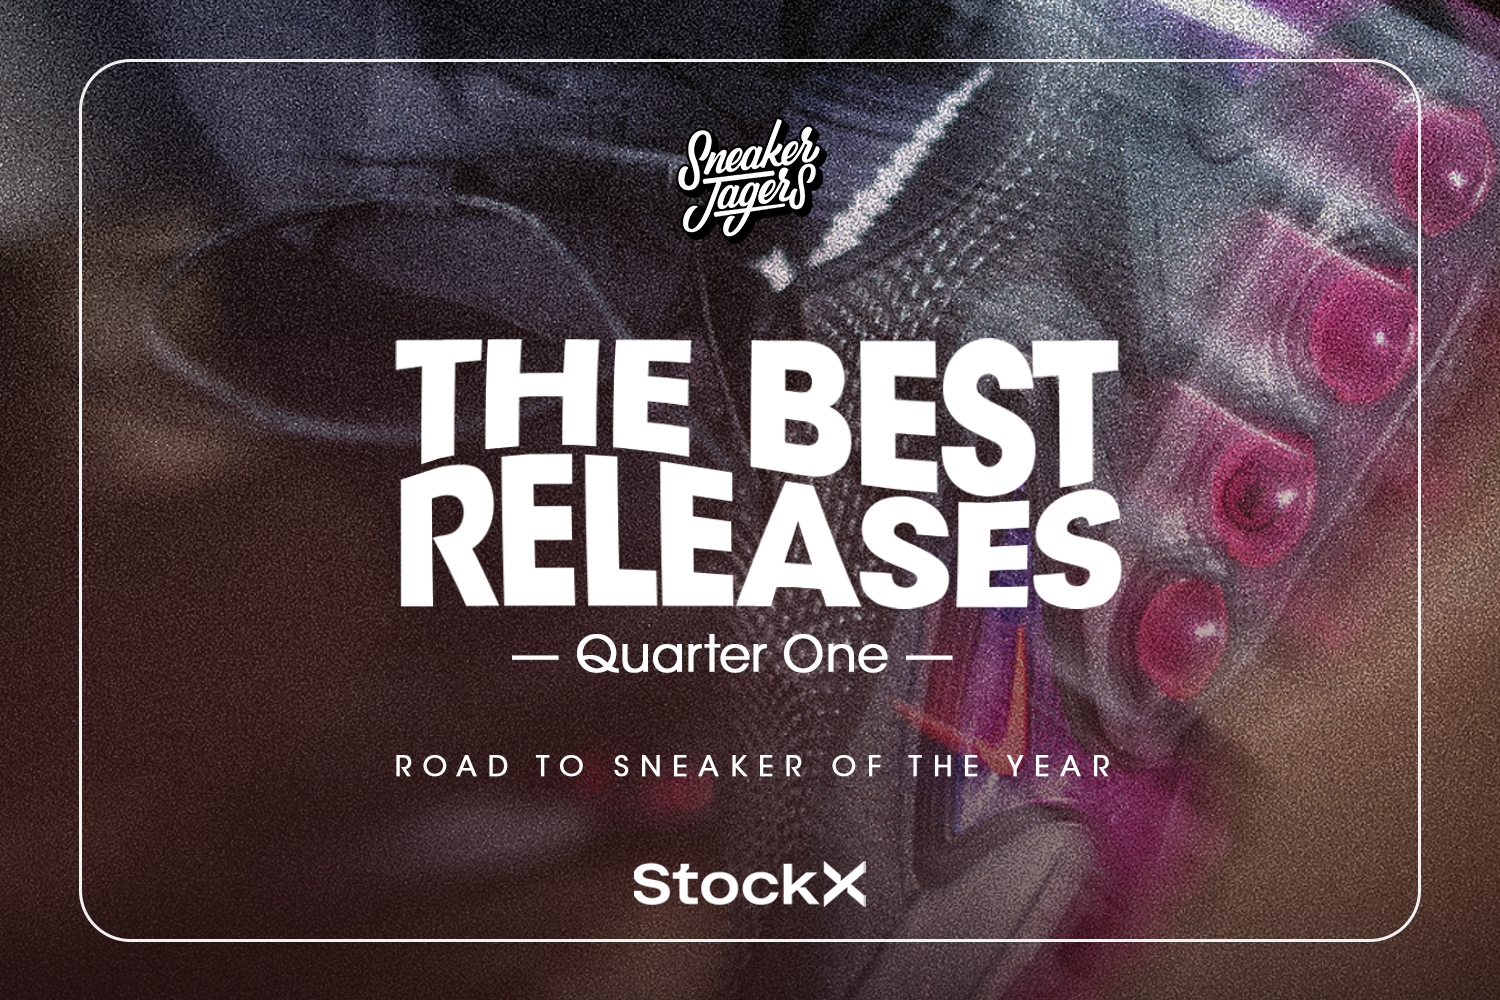 Sneakerjagers Road to Sneaker of the Year giveaway - winnaar bekend